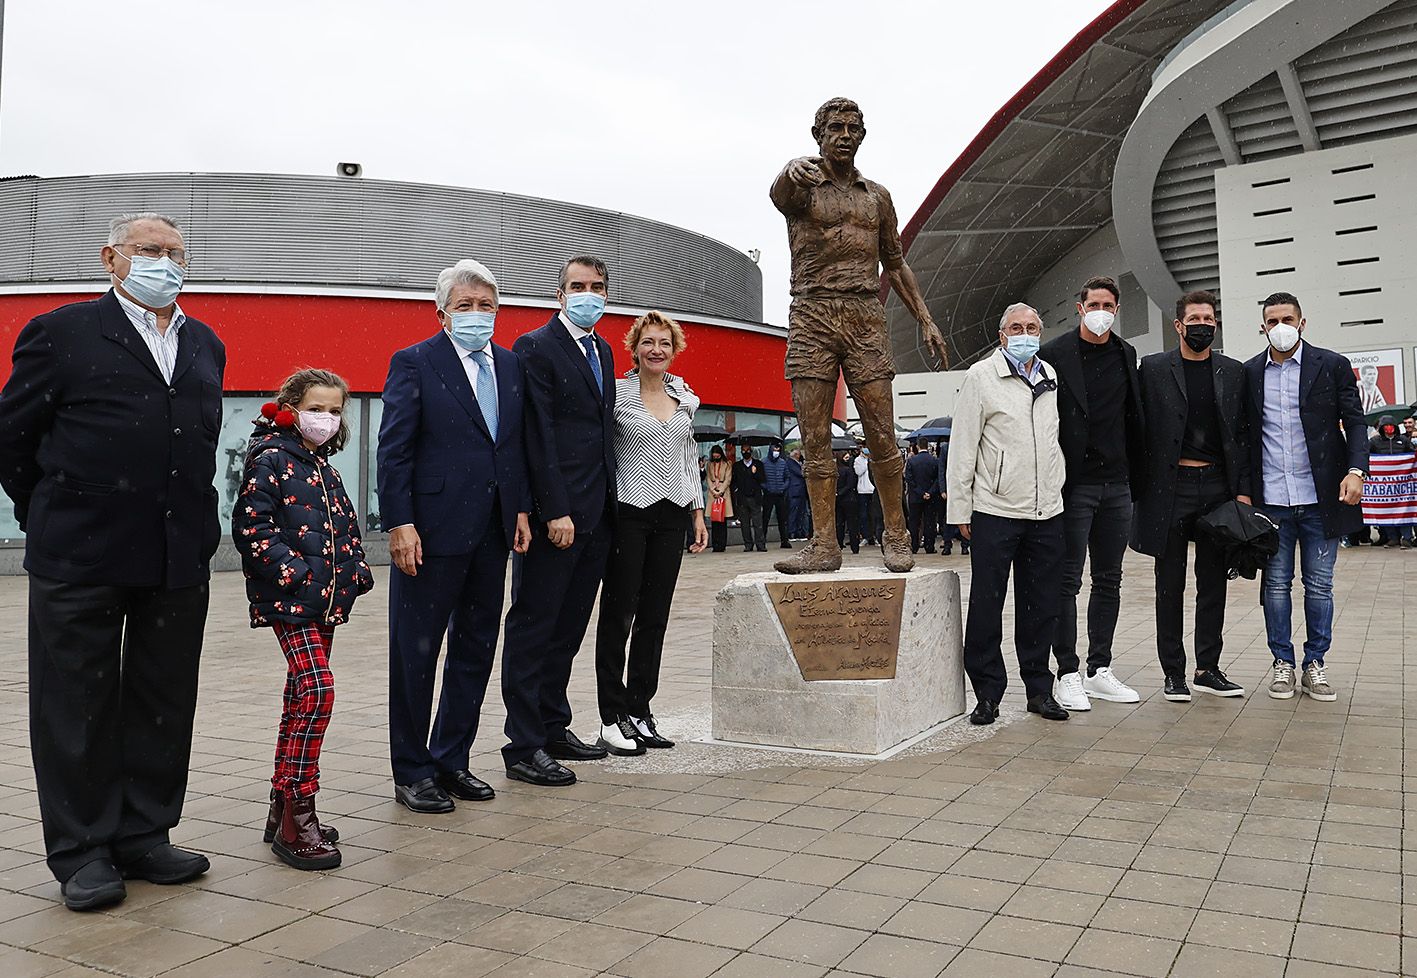 Dirigentes y familiares, junto a la estatua de Luis Aragonés, leyenda del Atlético y de la selección española, en el Wanda Metropolitano.   @ATLETI